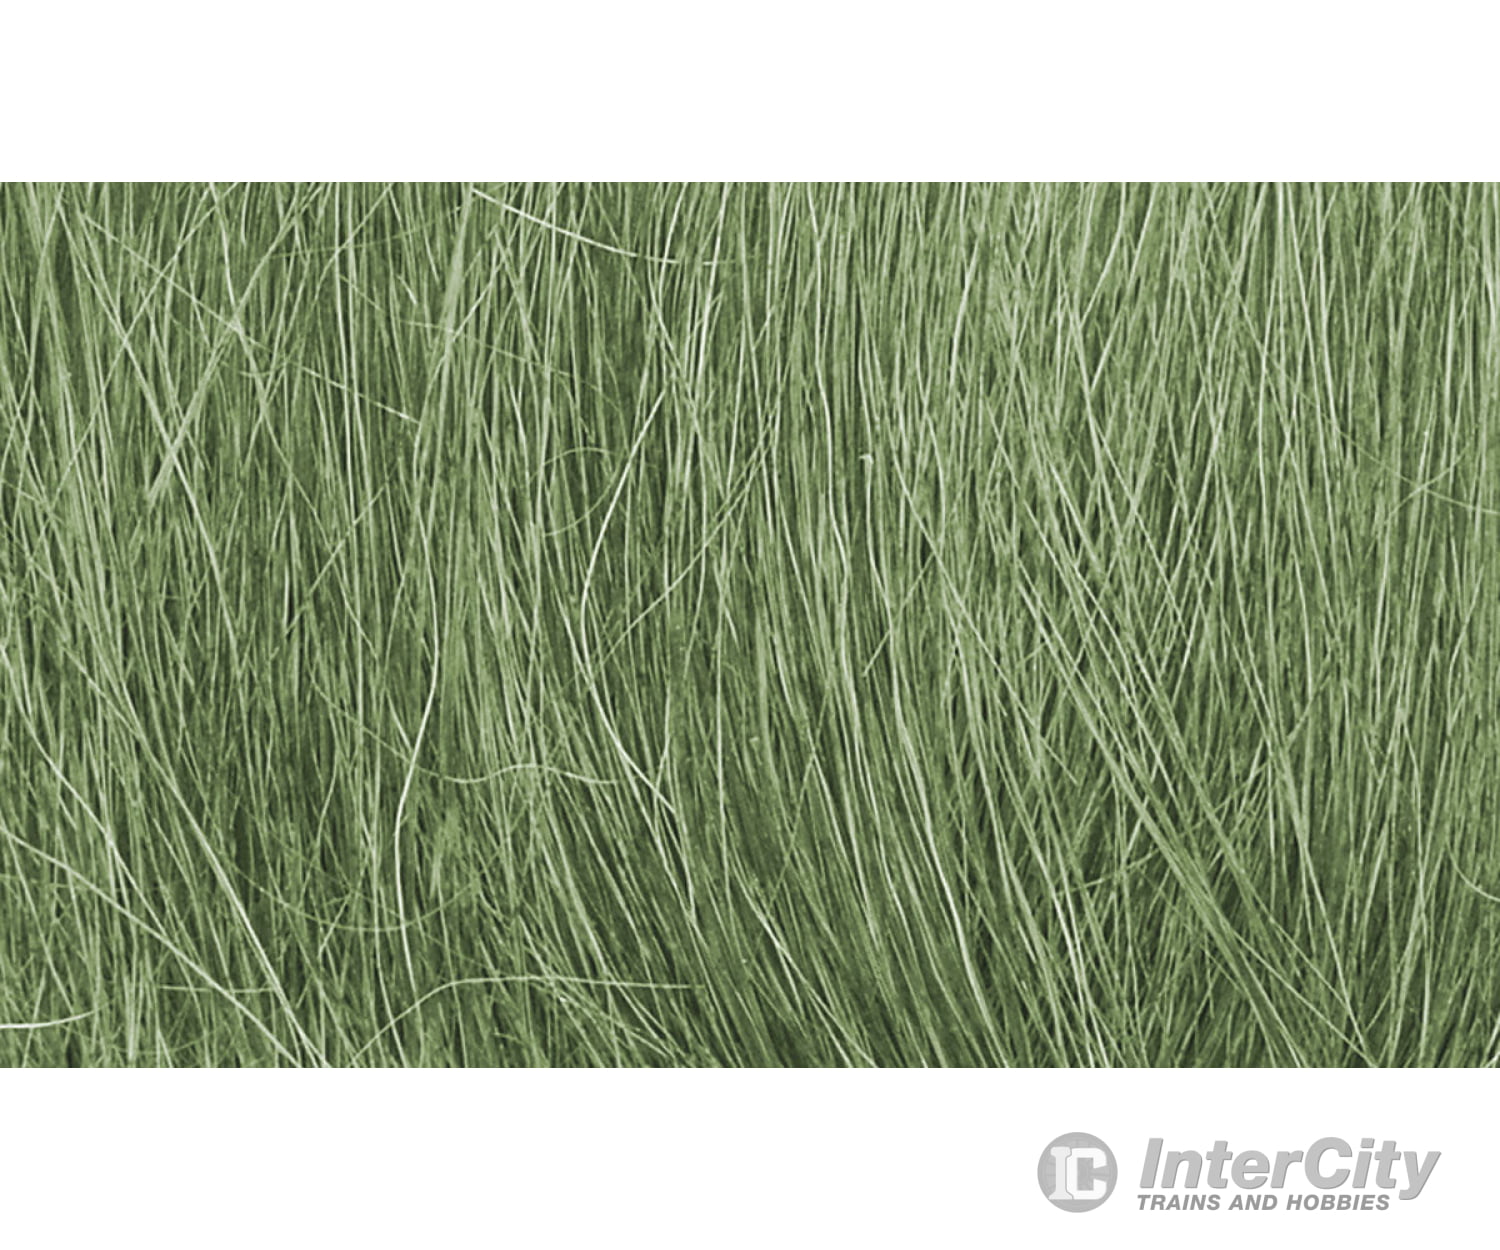 Woodland Scenics 174 Field Grass - Medium Green Static Grass & Applicators